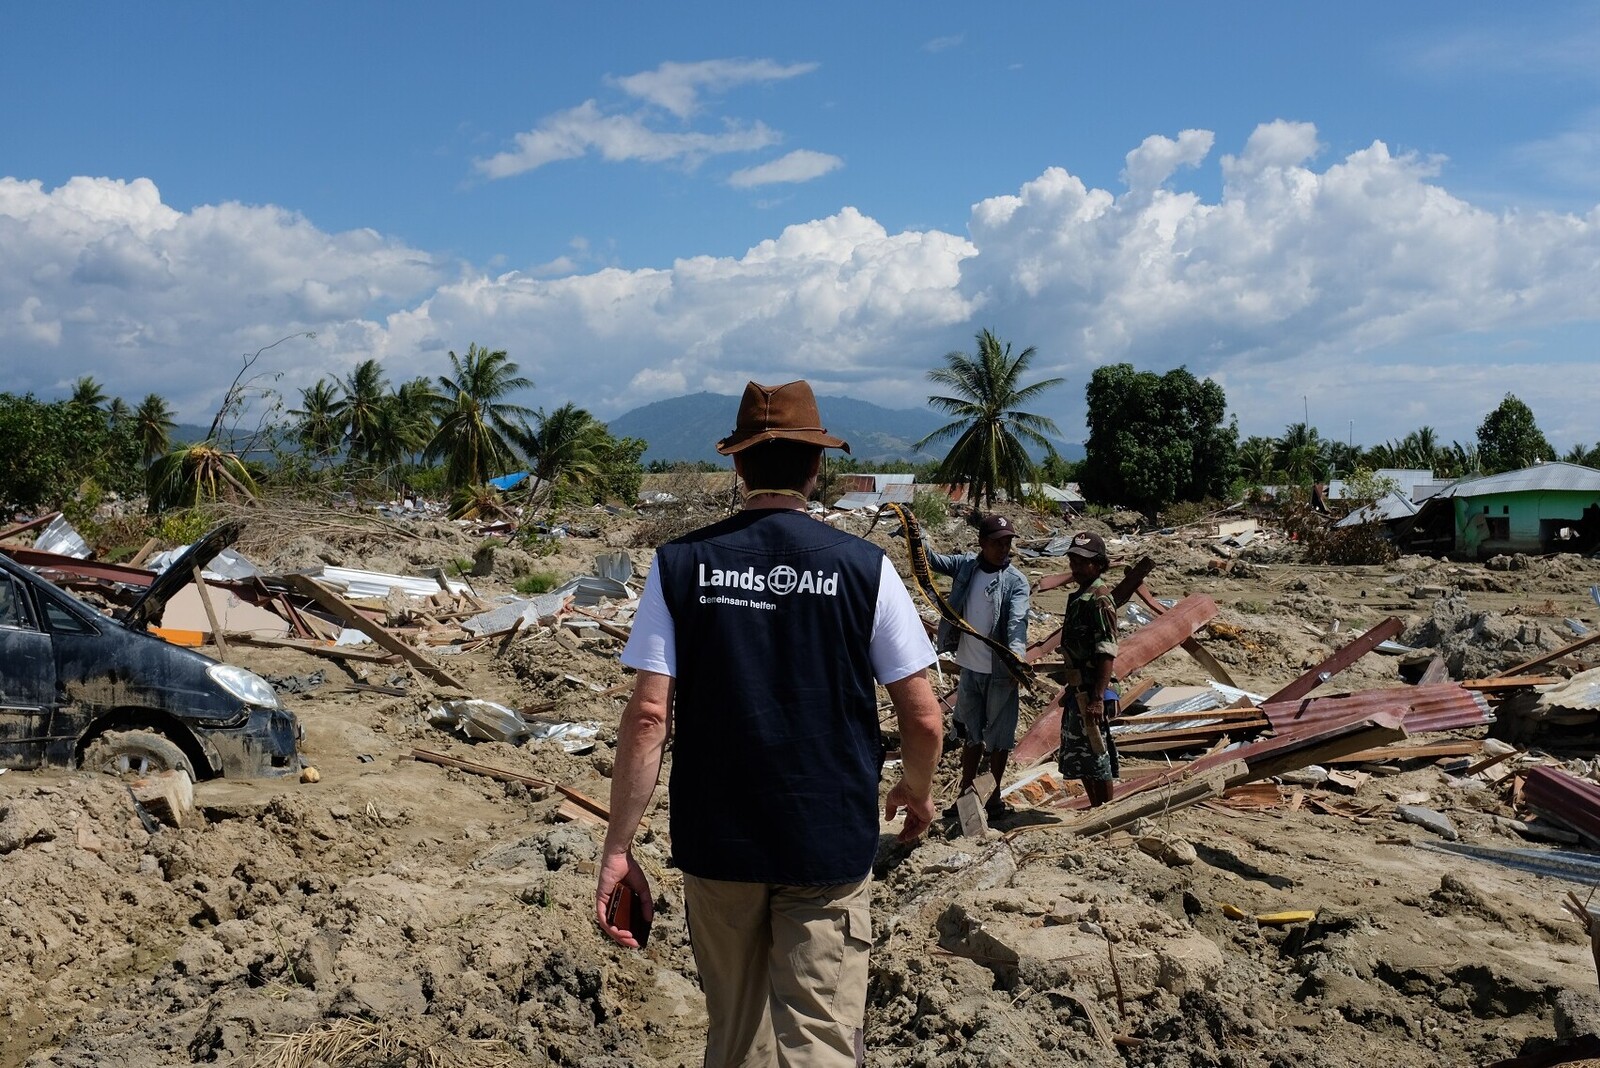 Ein Mitarbeiter der Hilfsorganisation LandsAid inmitten des Katastrophengebiets auf Sulawesi